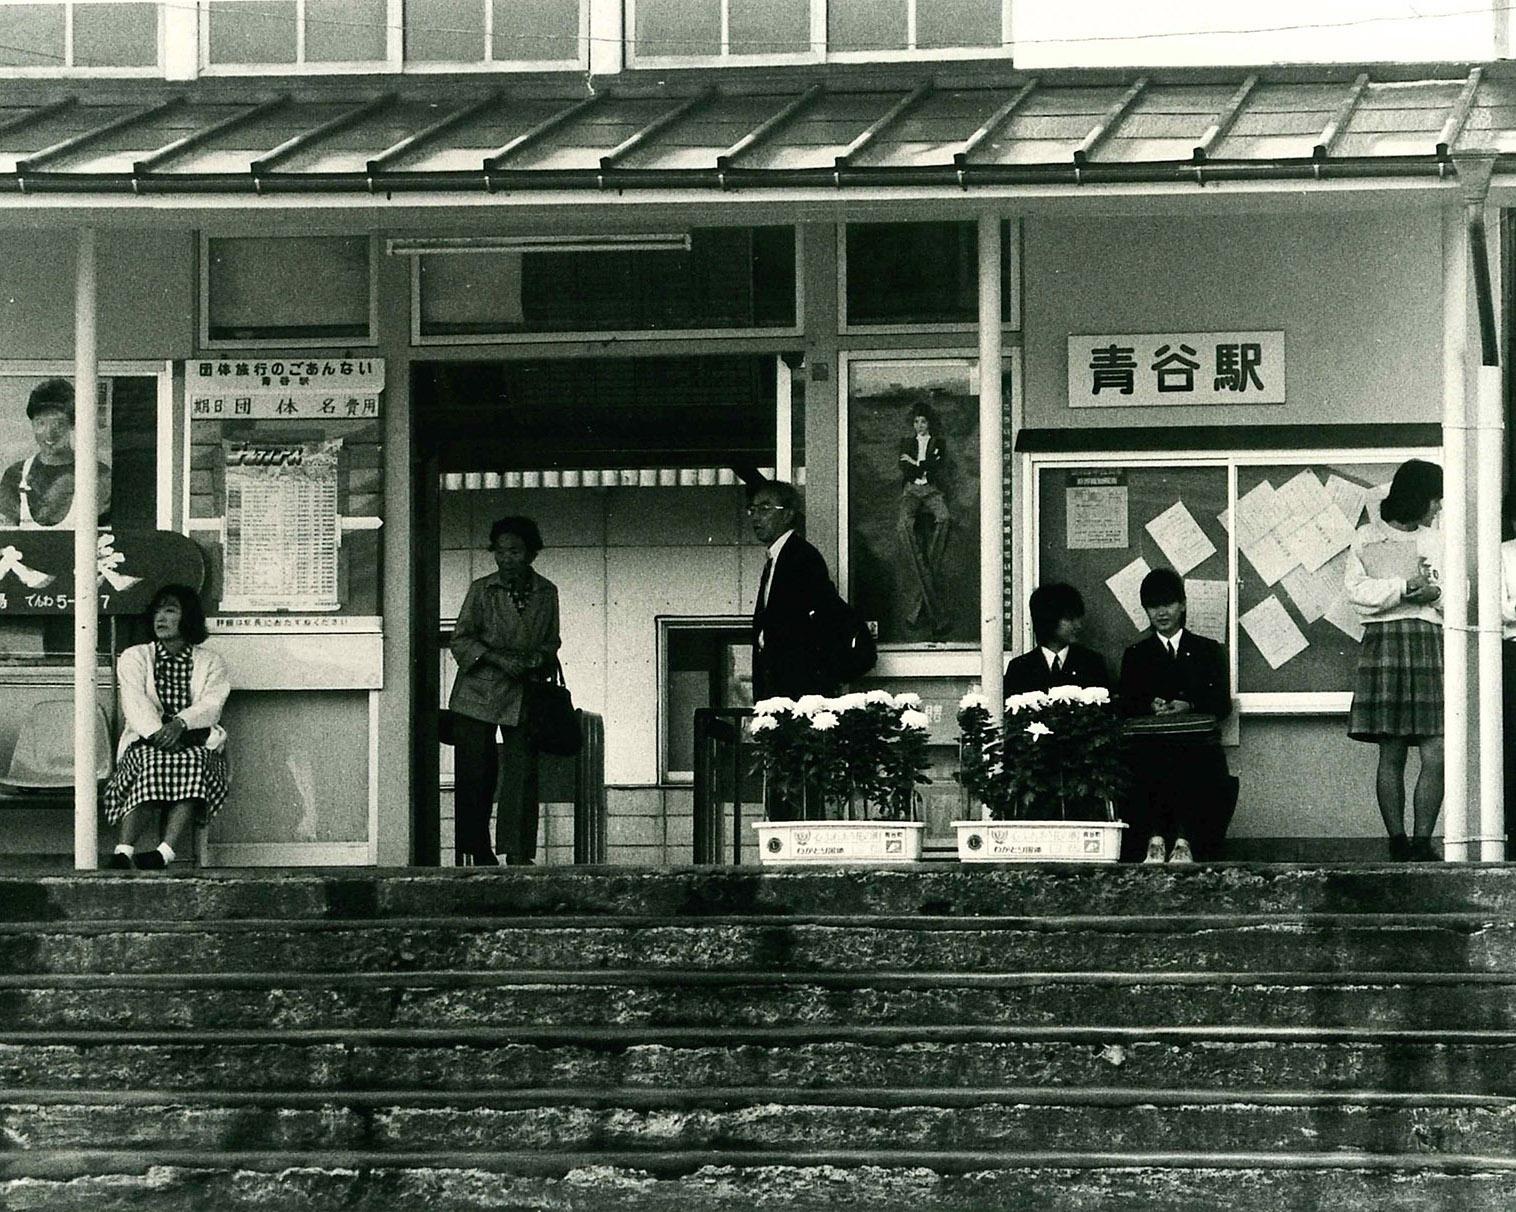 青谷を写真で振り返る、鳥取県の鳥取市あおや郷土館で「青谷駅と駅前の今昔物語」開催